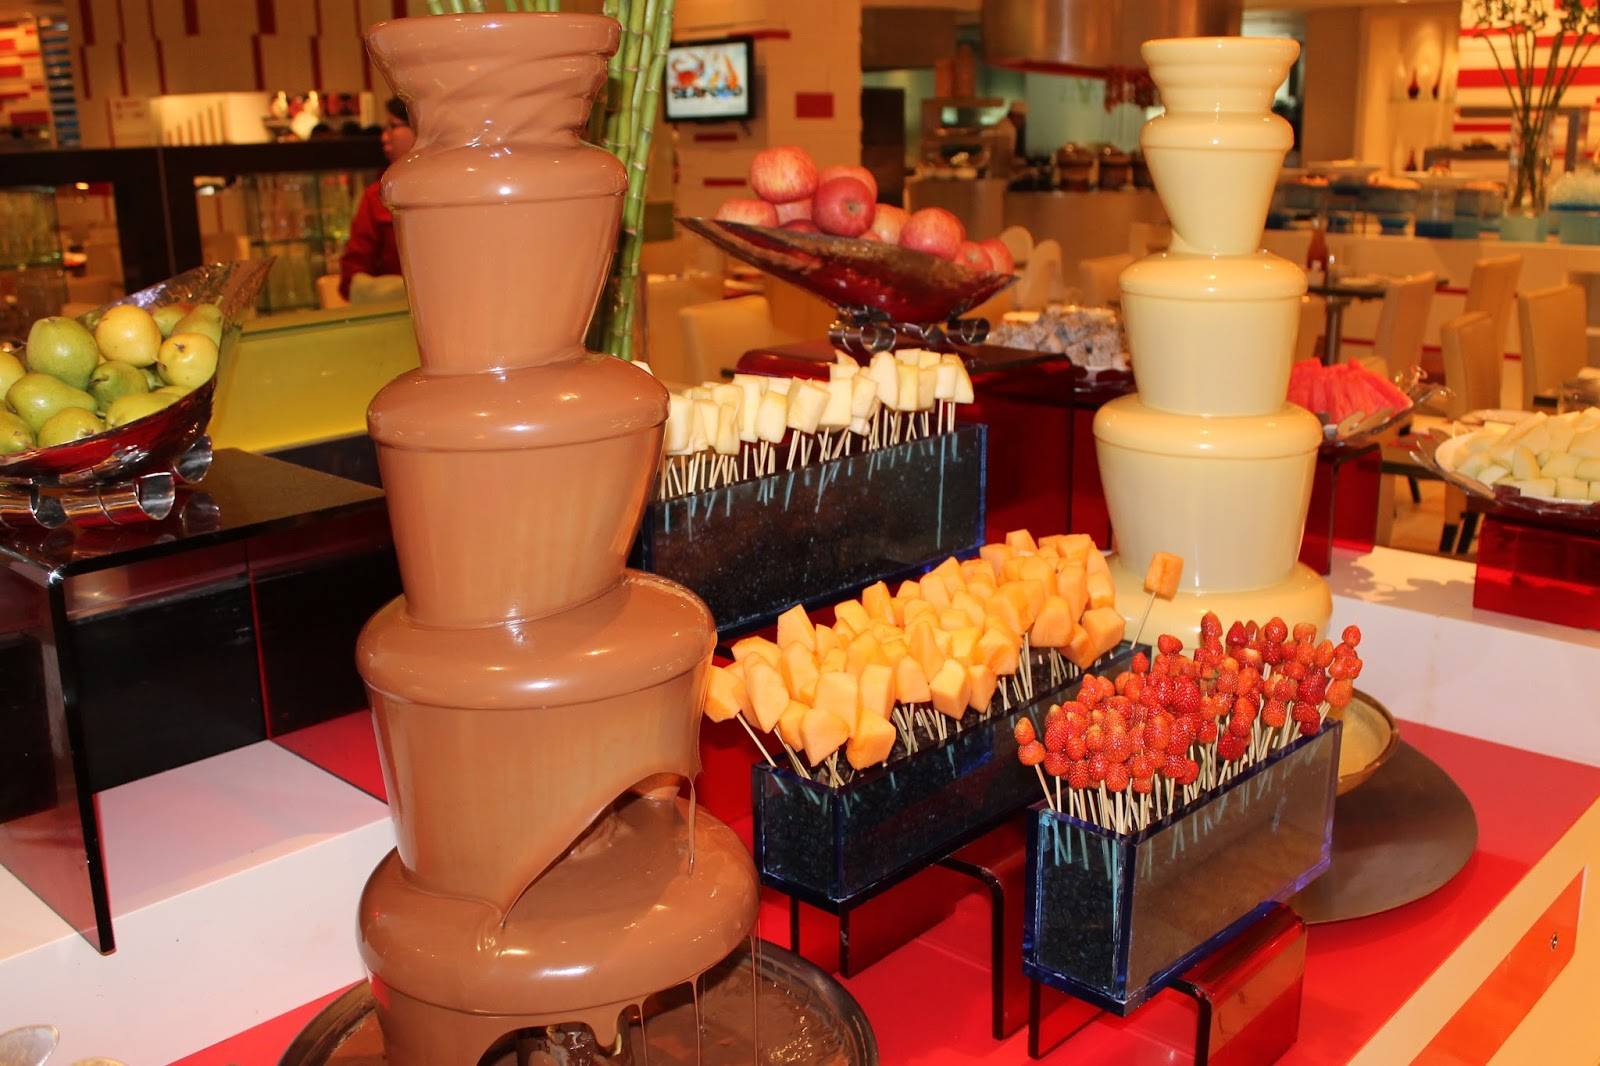 Отзывы о разных видах шоколадных фонтанов, принцип работы оборудования и популярные производители